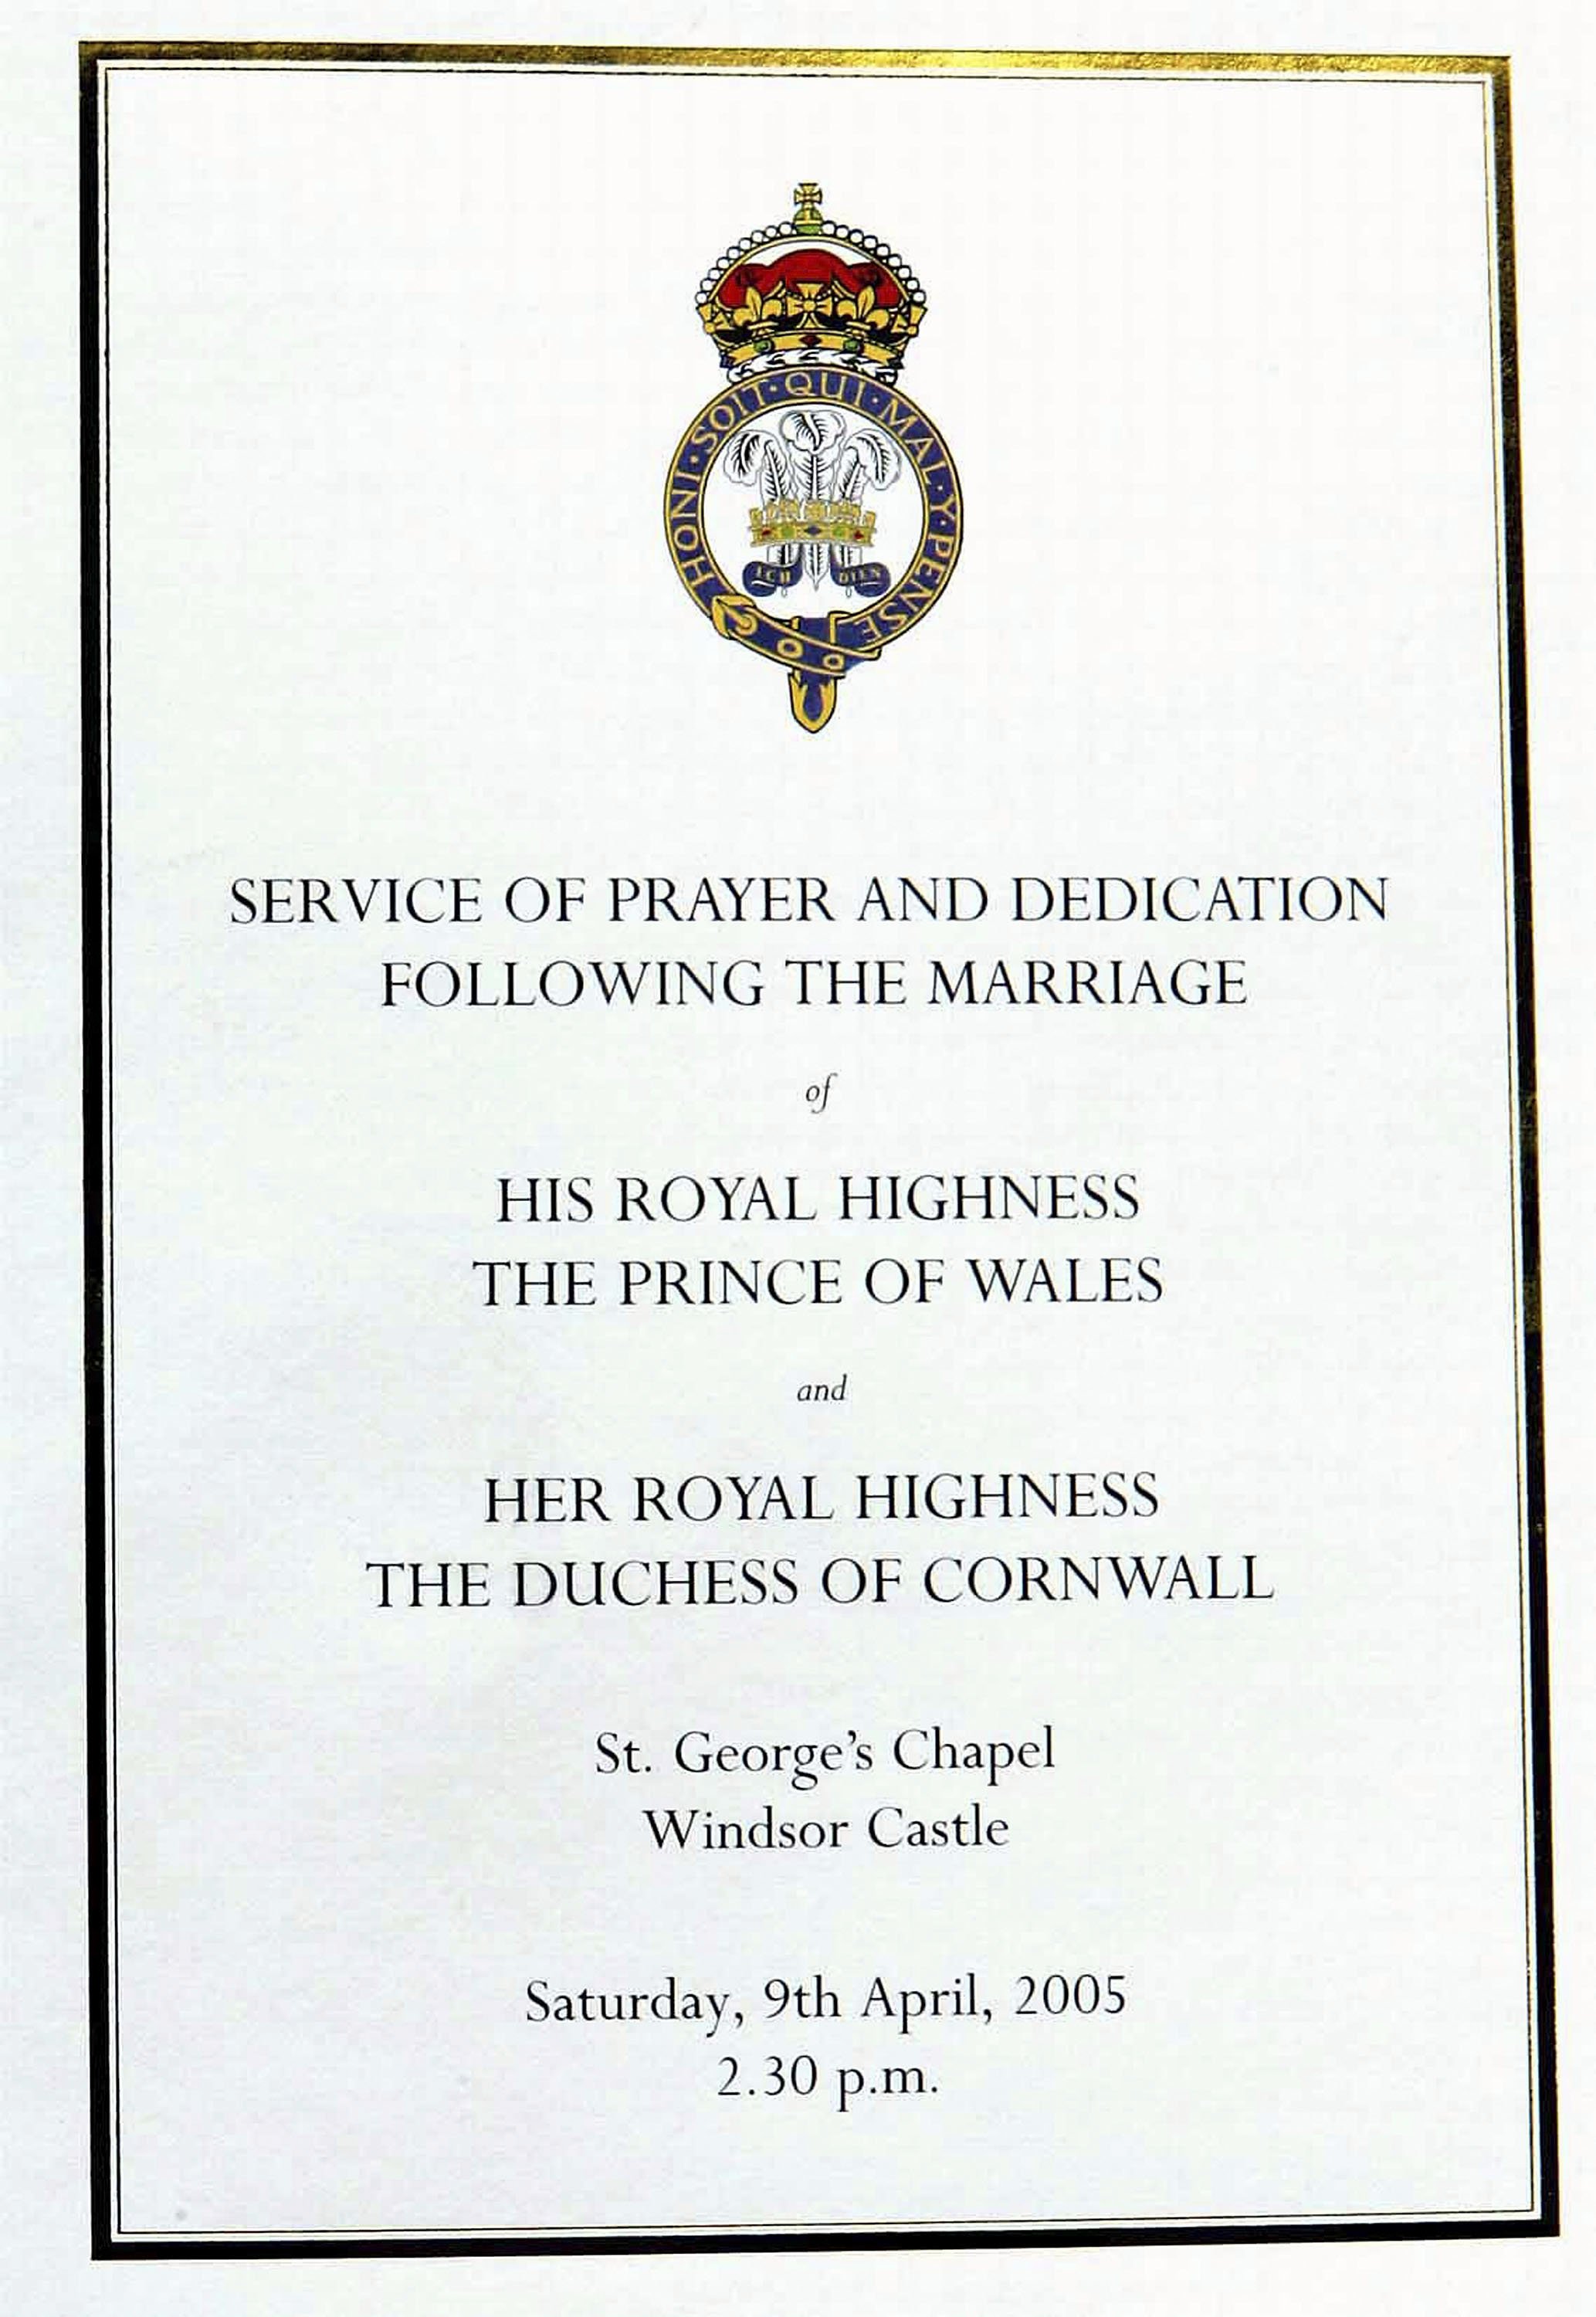 Le programme officiel du service de prière et de dédicace pour TRH Prince Charles, le Prince de Galles, et Camilla, la Duchesse de Cornouailles, bénissant leur mariage au Château de Windsor le 9 avril 2005 à Berkshire, Angleterre | Source : Getty Images